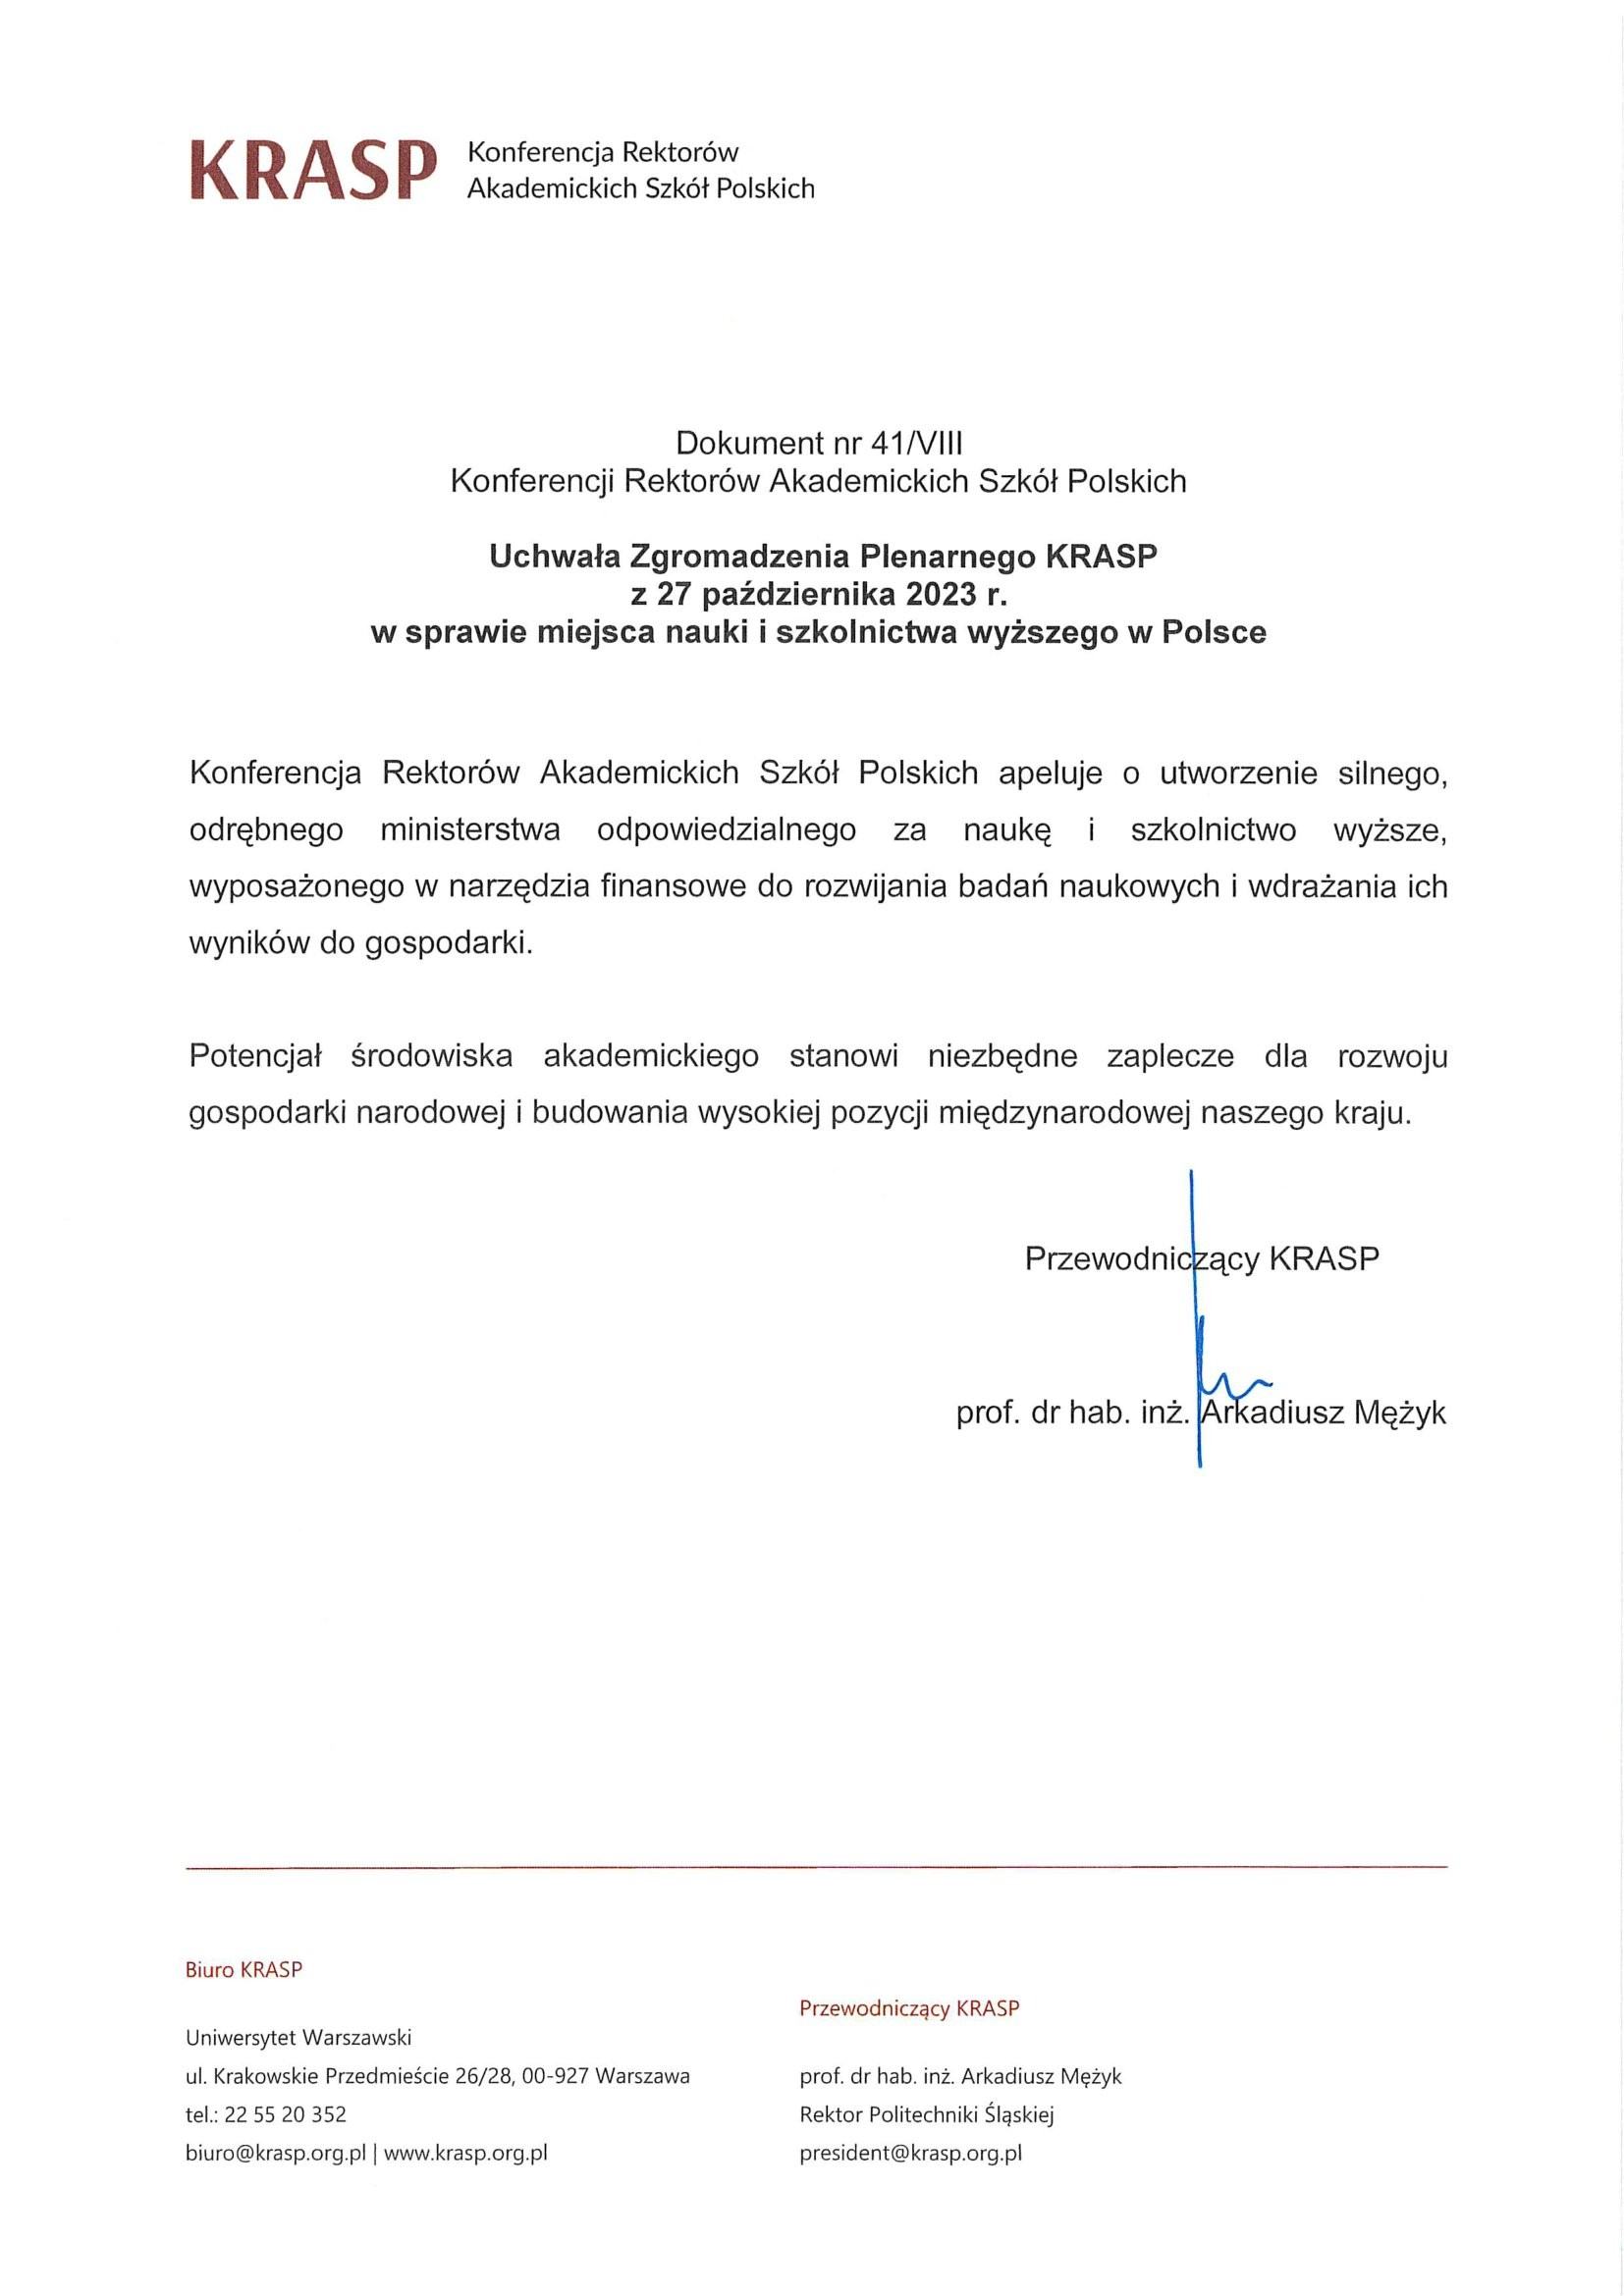 KRASP - Uchwała z 27 października 2023 r.